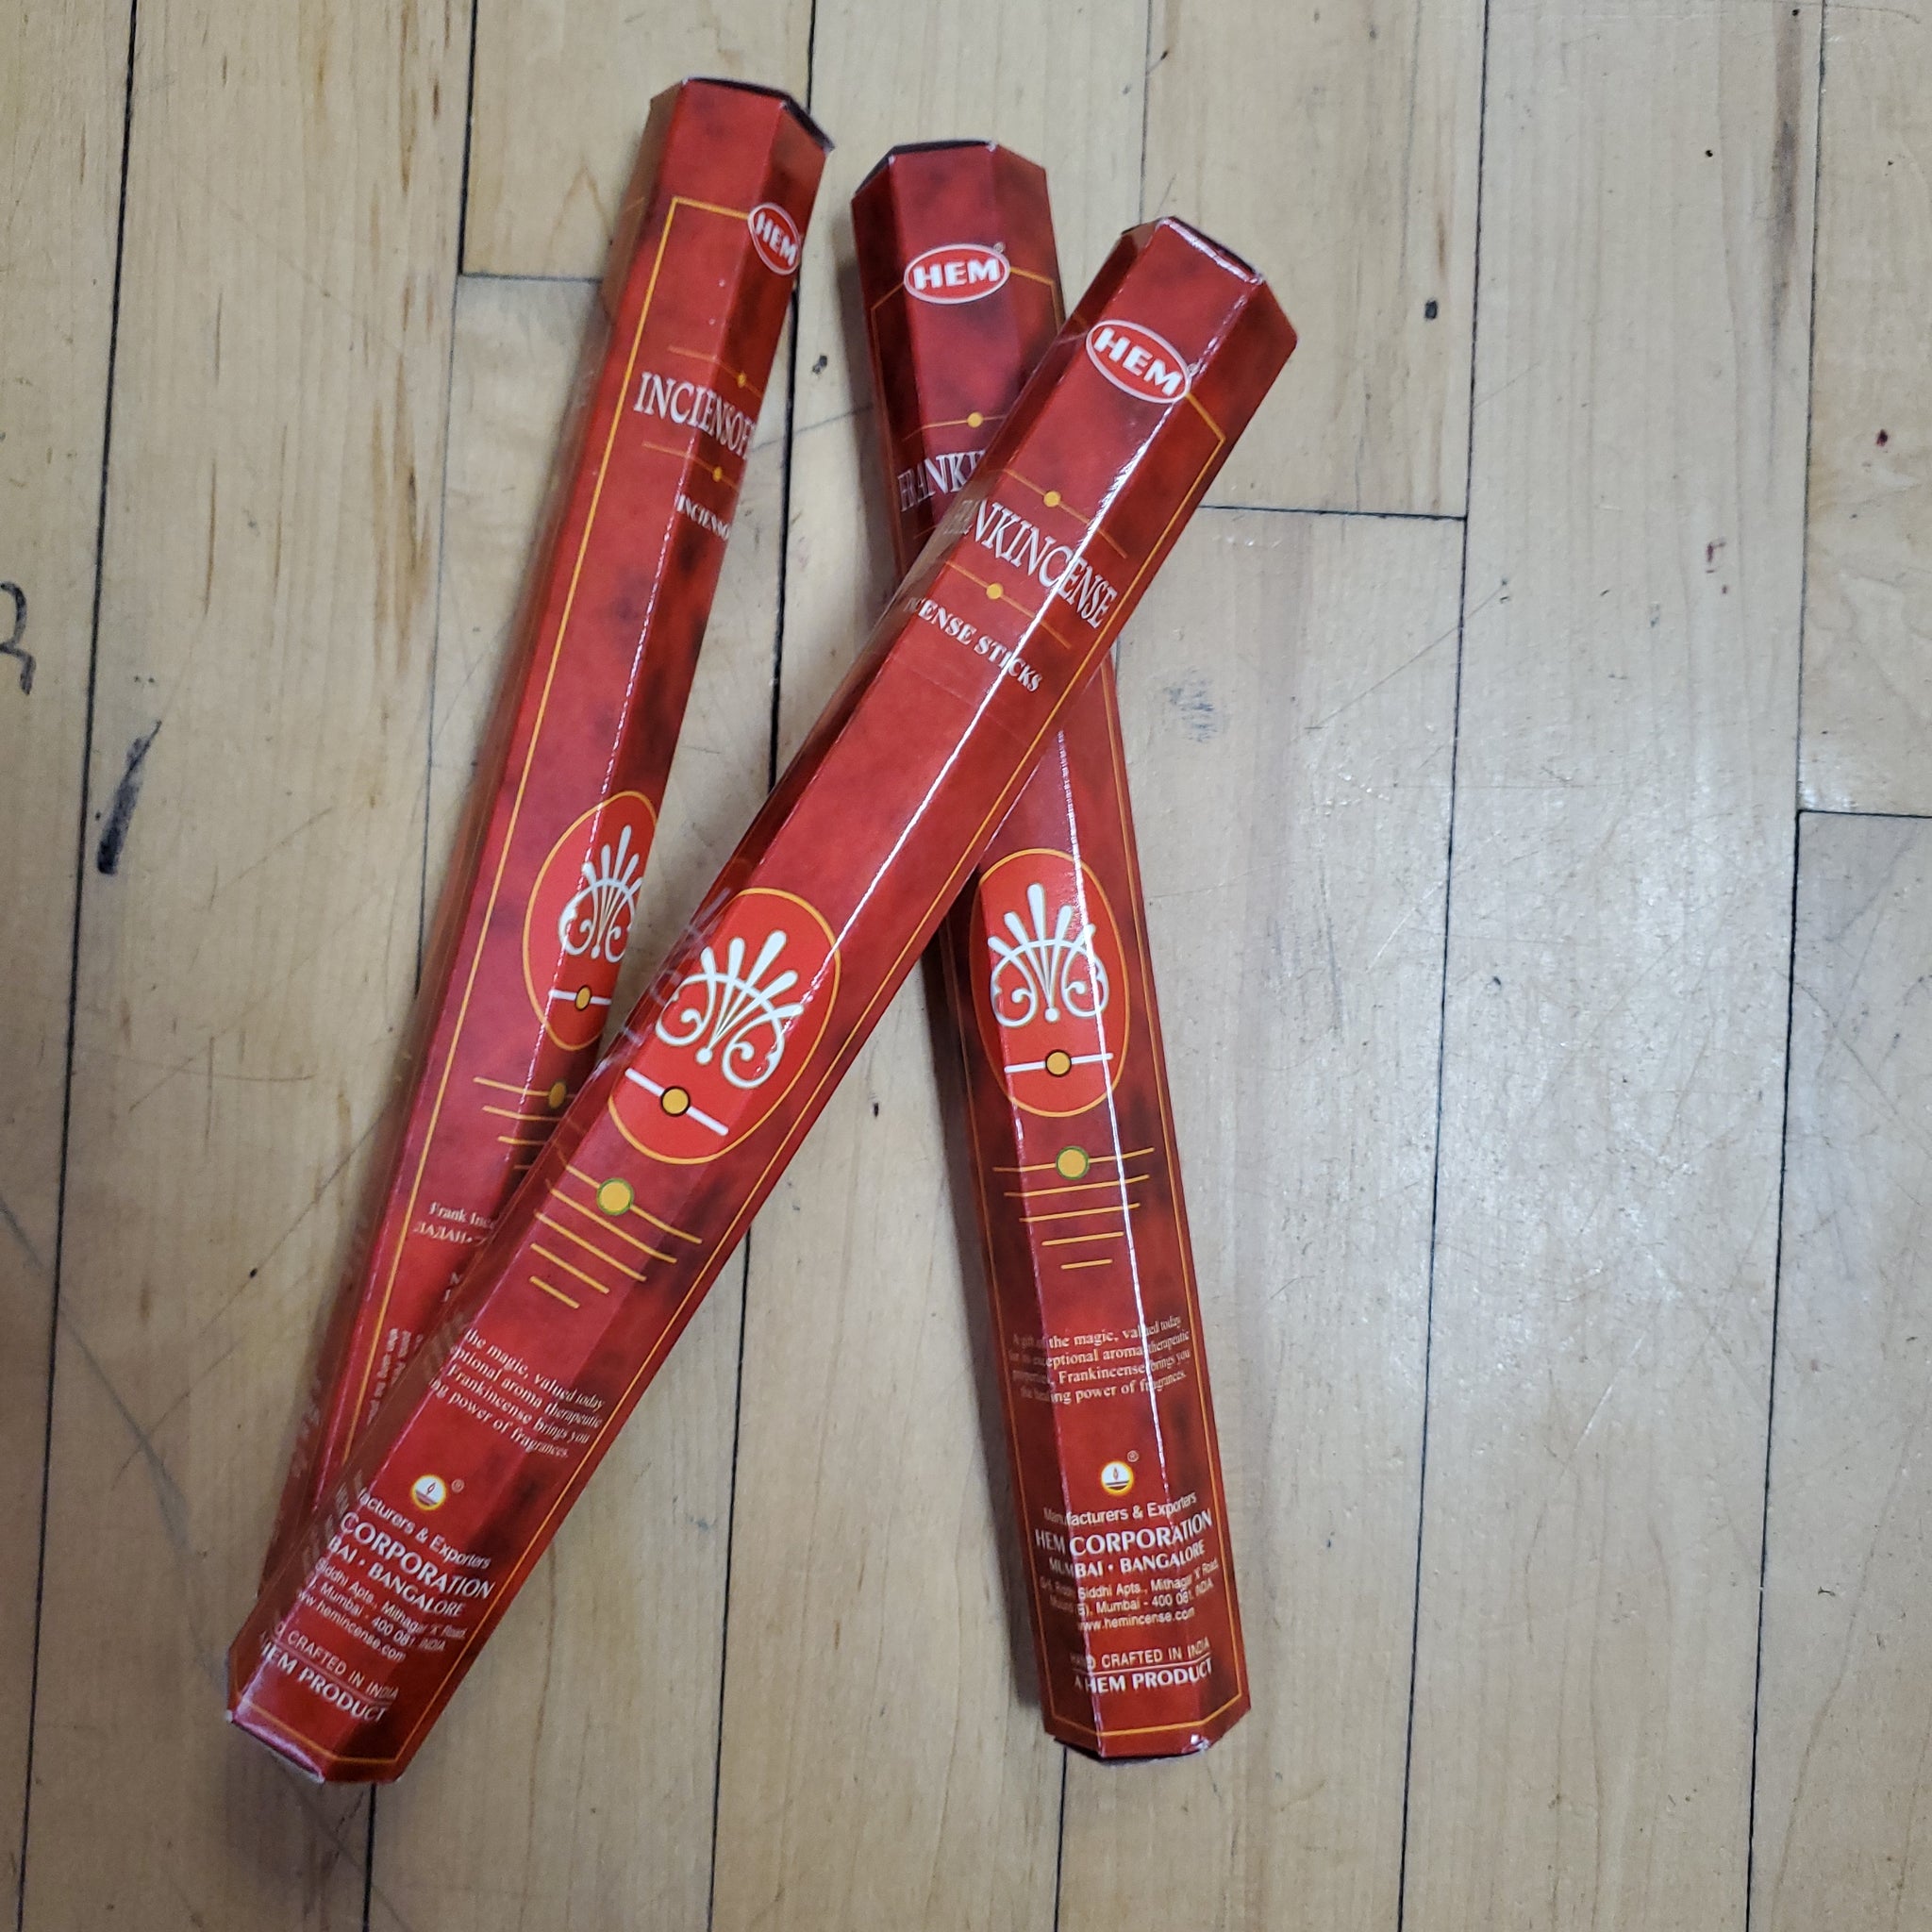 HEM Frankincense Incense Sticks - 20 Pack